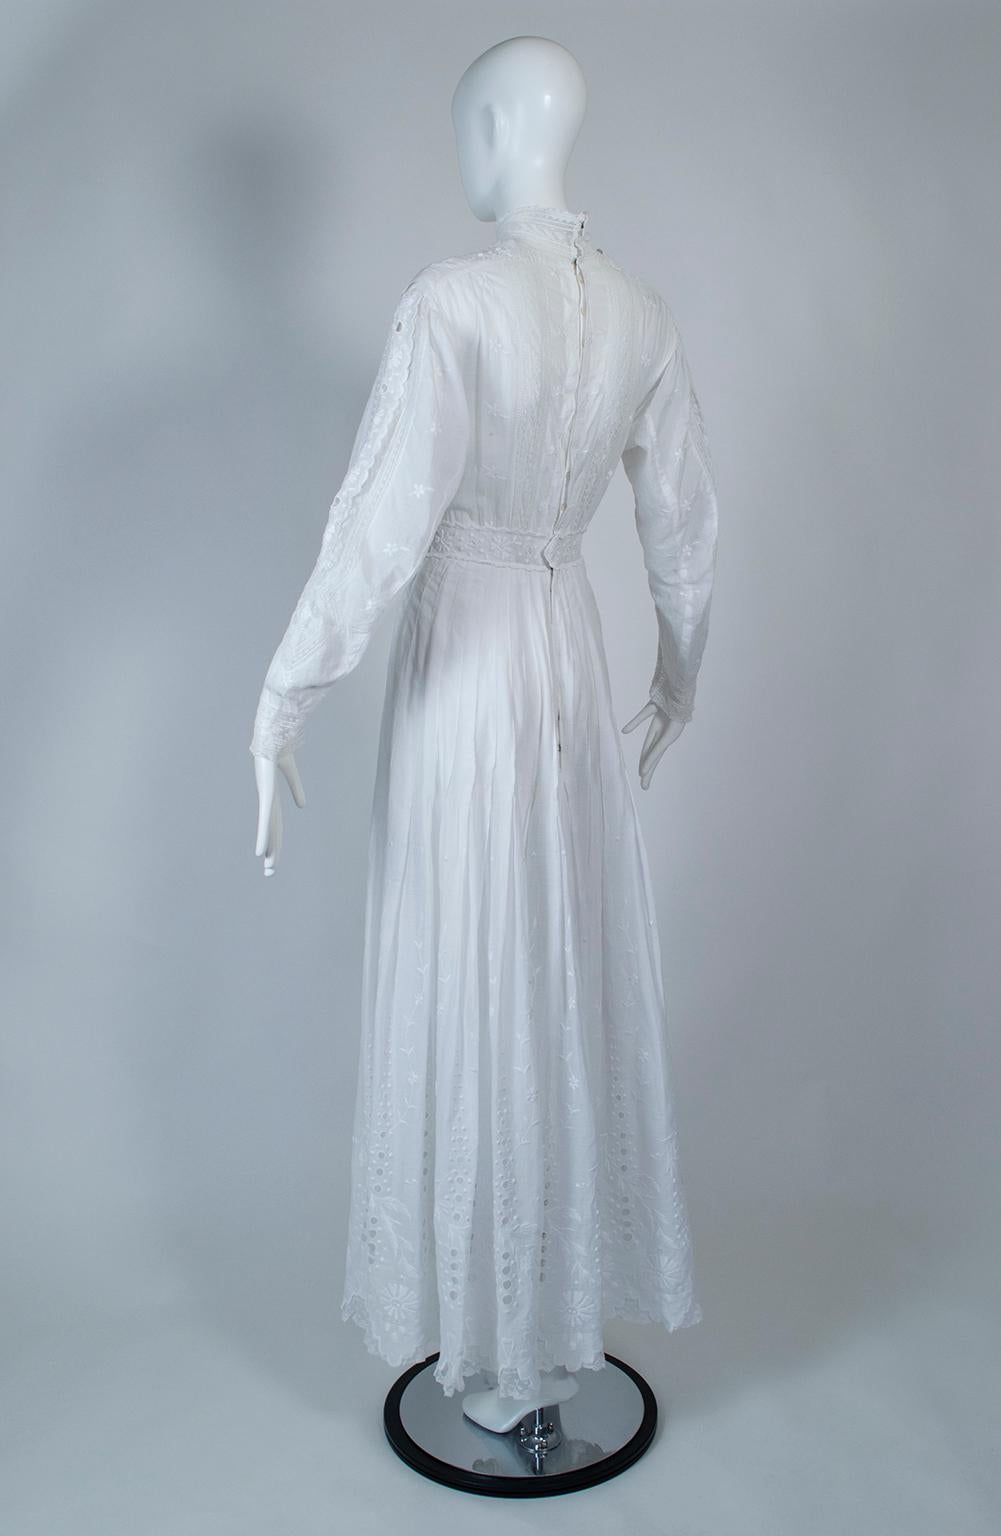 1880s dresses